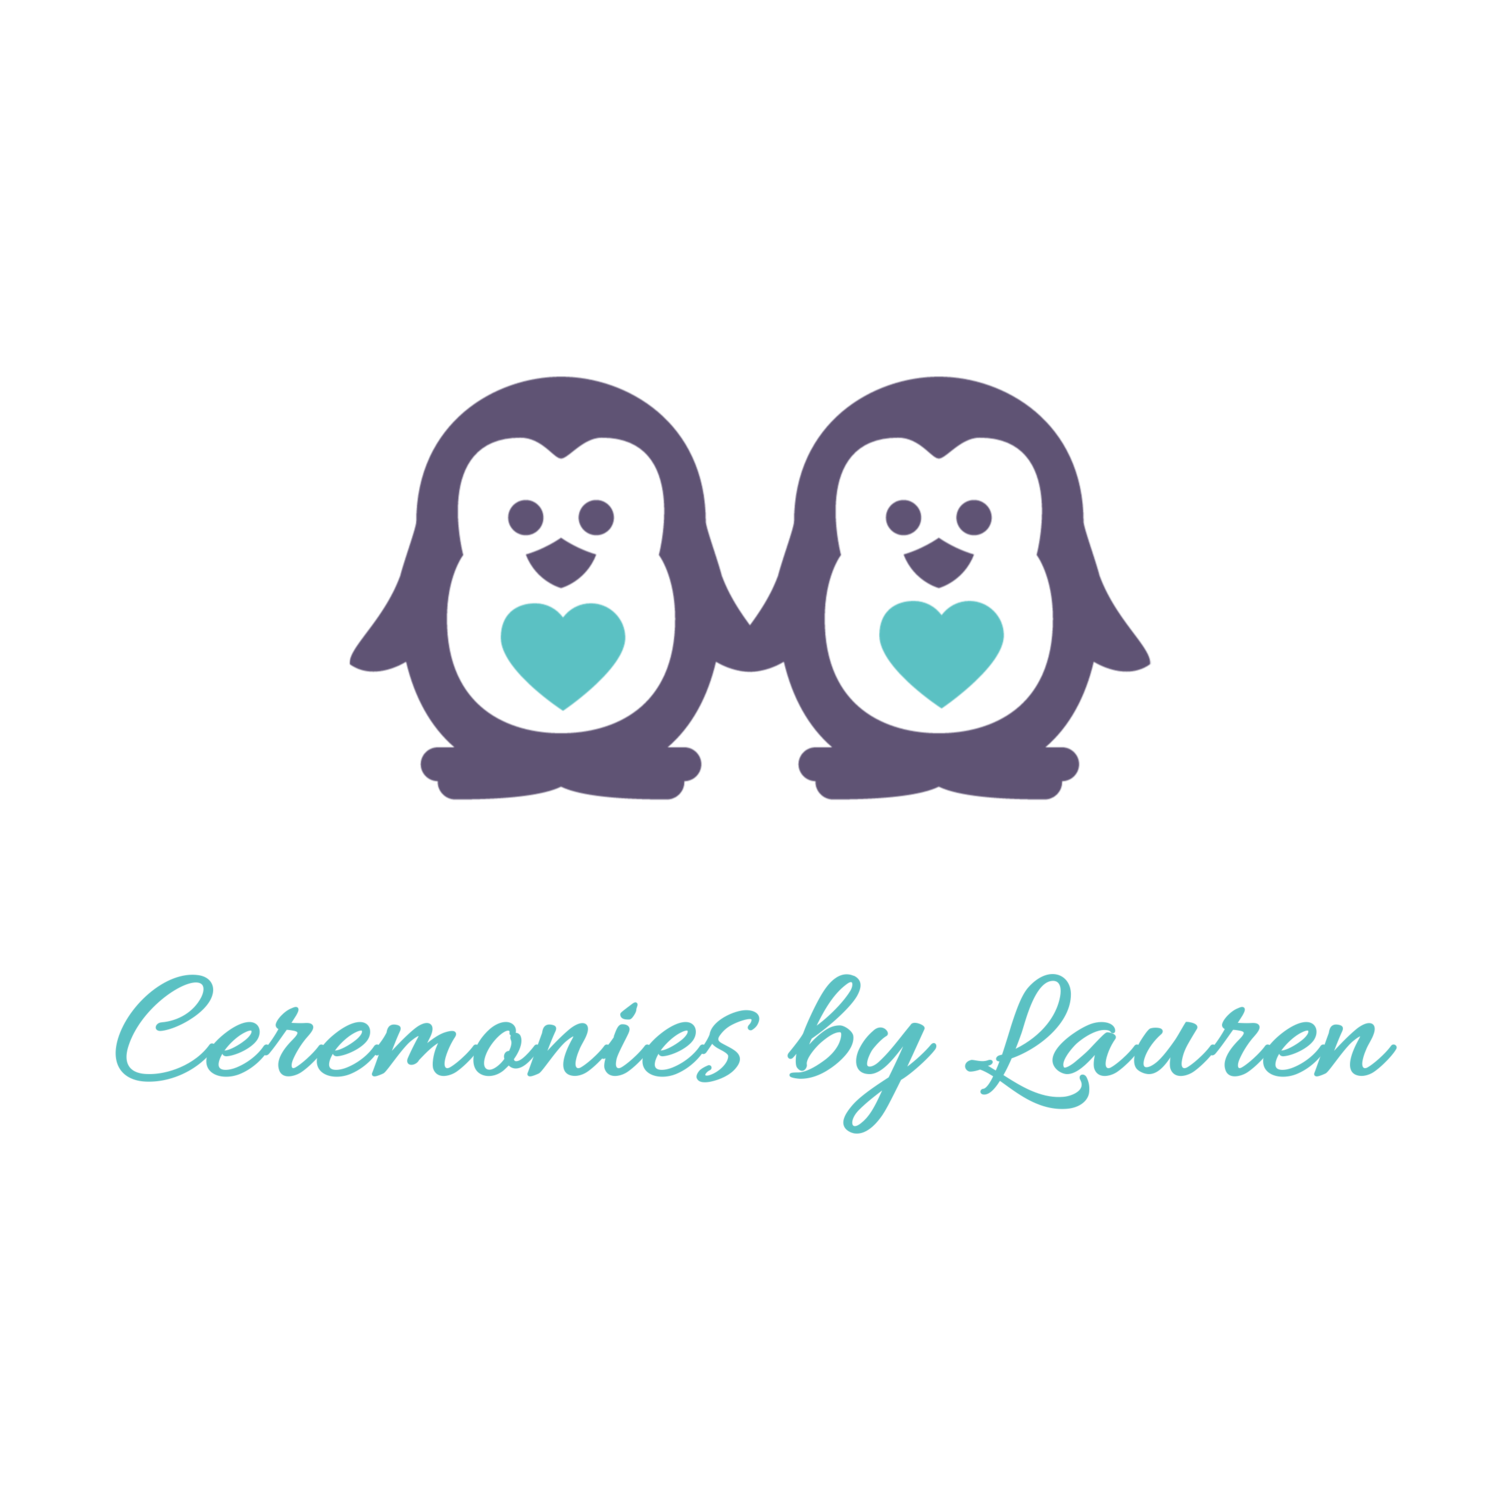 Ceremonies by Lauren